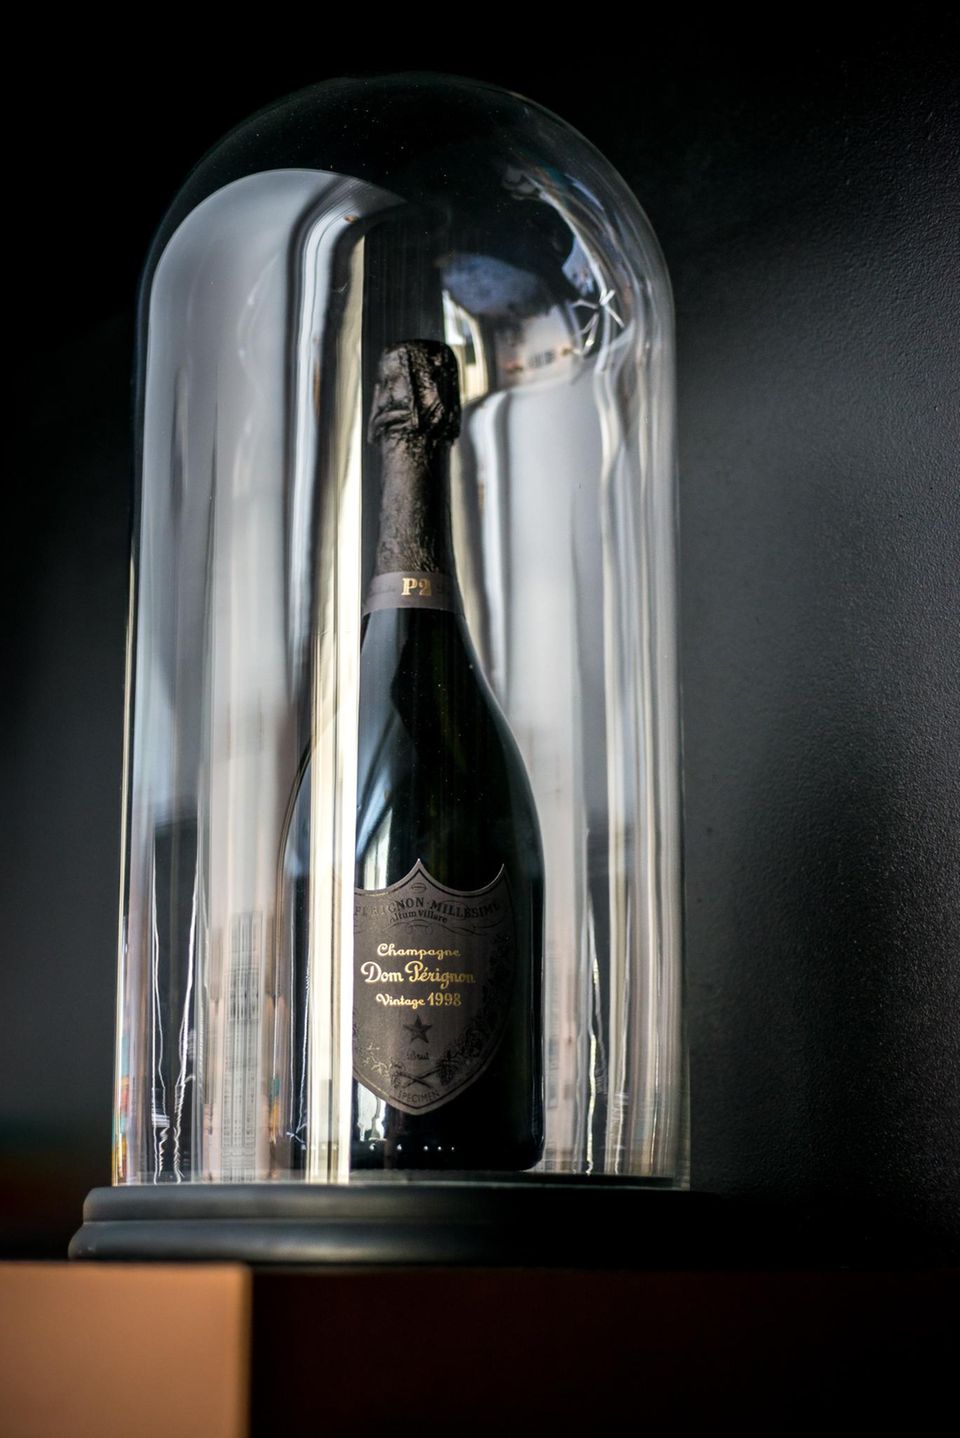 Die Champagner-Spezialität "Dom Pérignon P2" wird 15 Jahre lang gelagert.